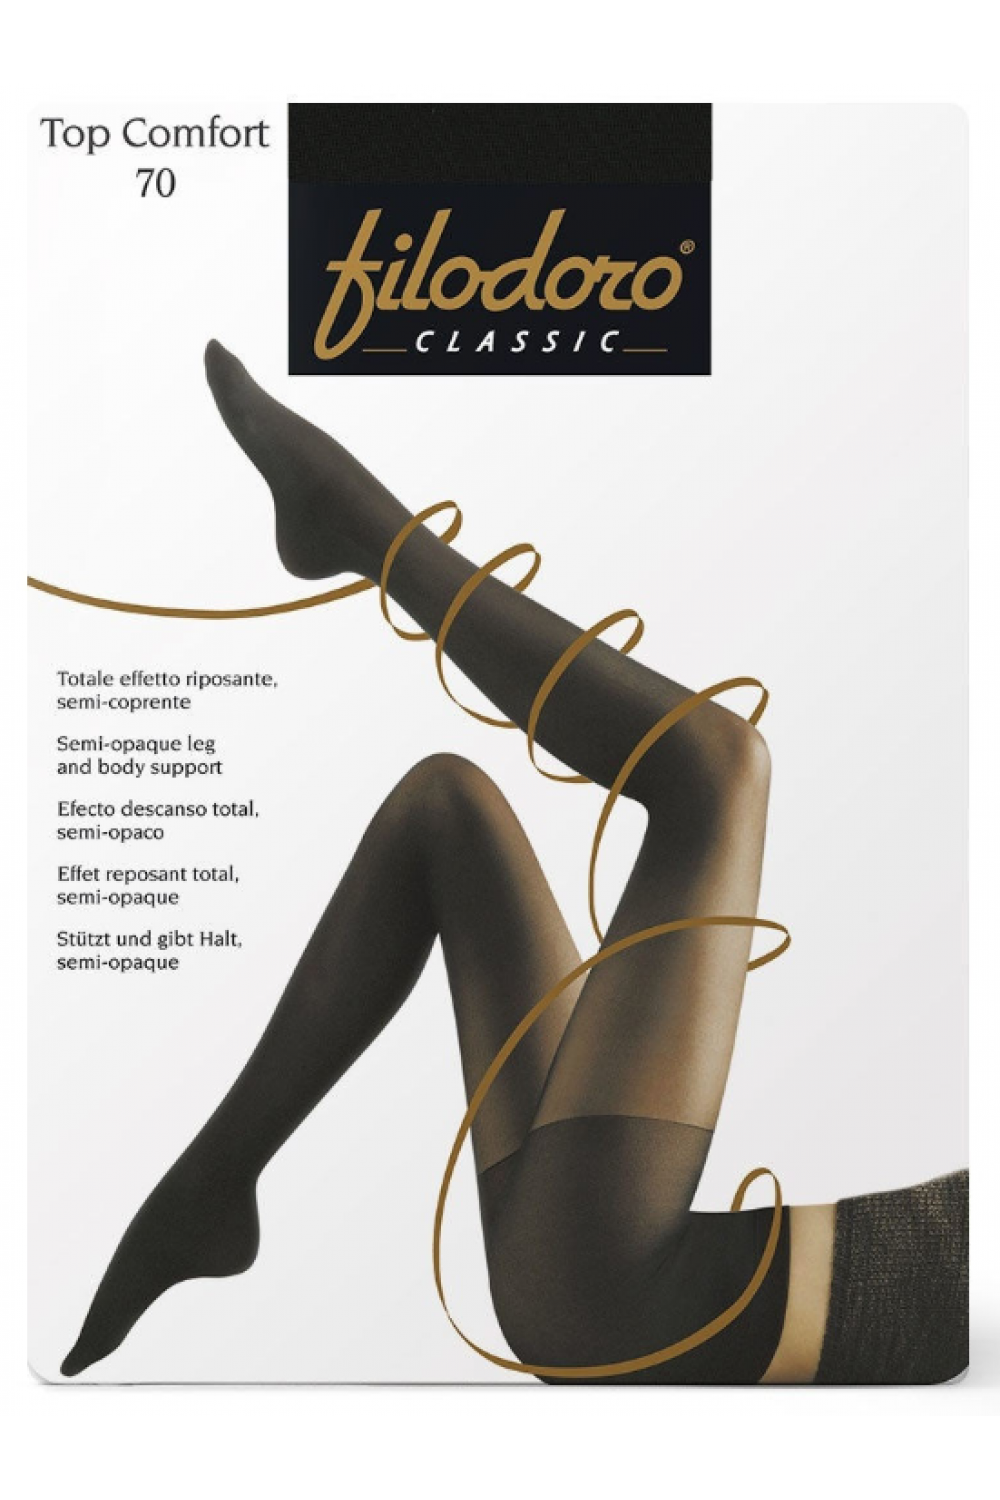 Top Comfort 70 (96/6)! Filodoro Плотные эластичные колготки с  поддерживающими шортиками